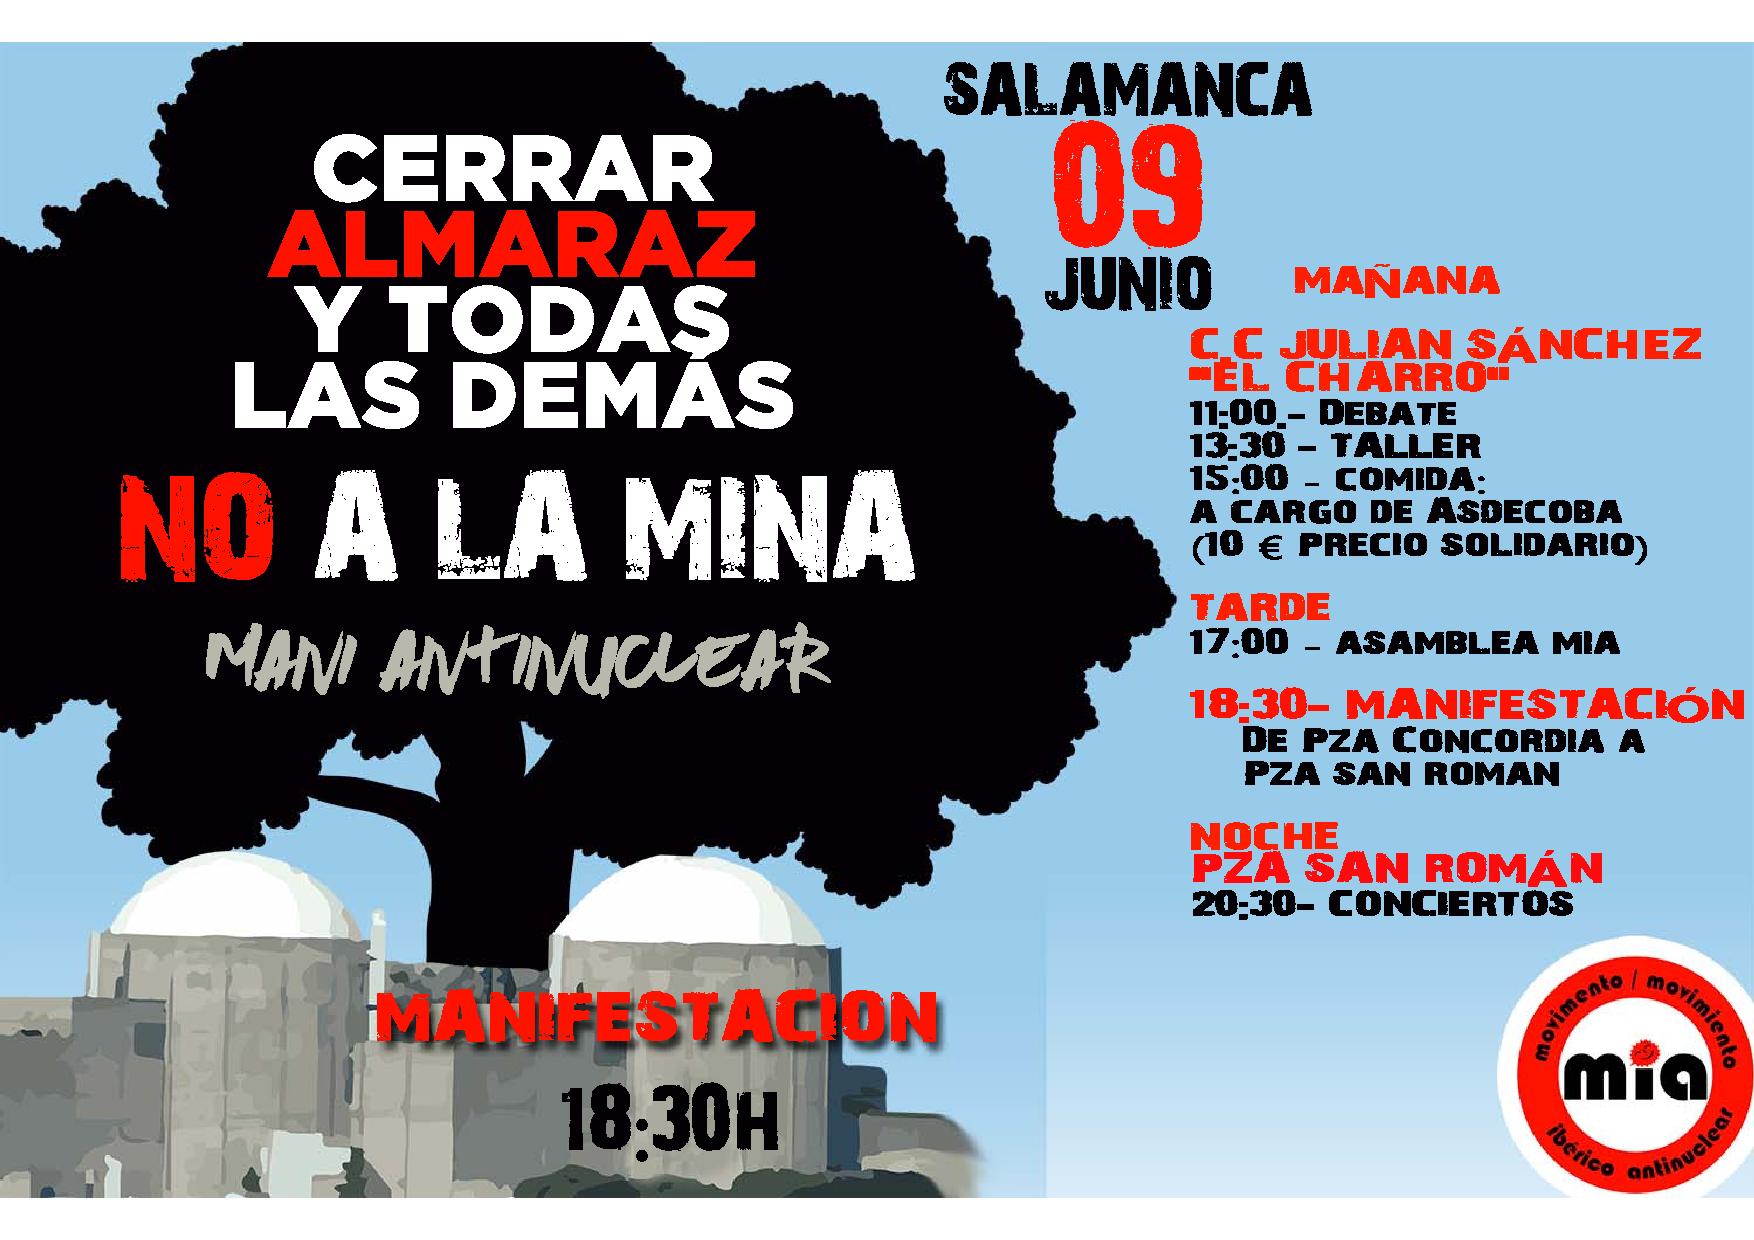 Cataz Manifestação Salamanca final Junho 2018 page 001